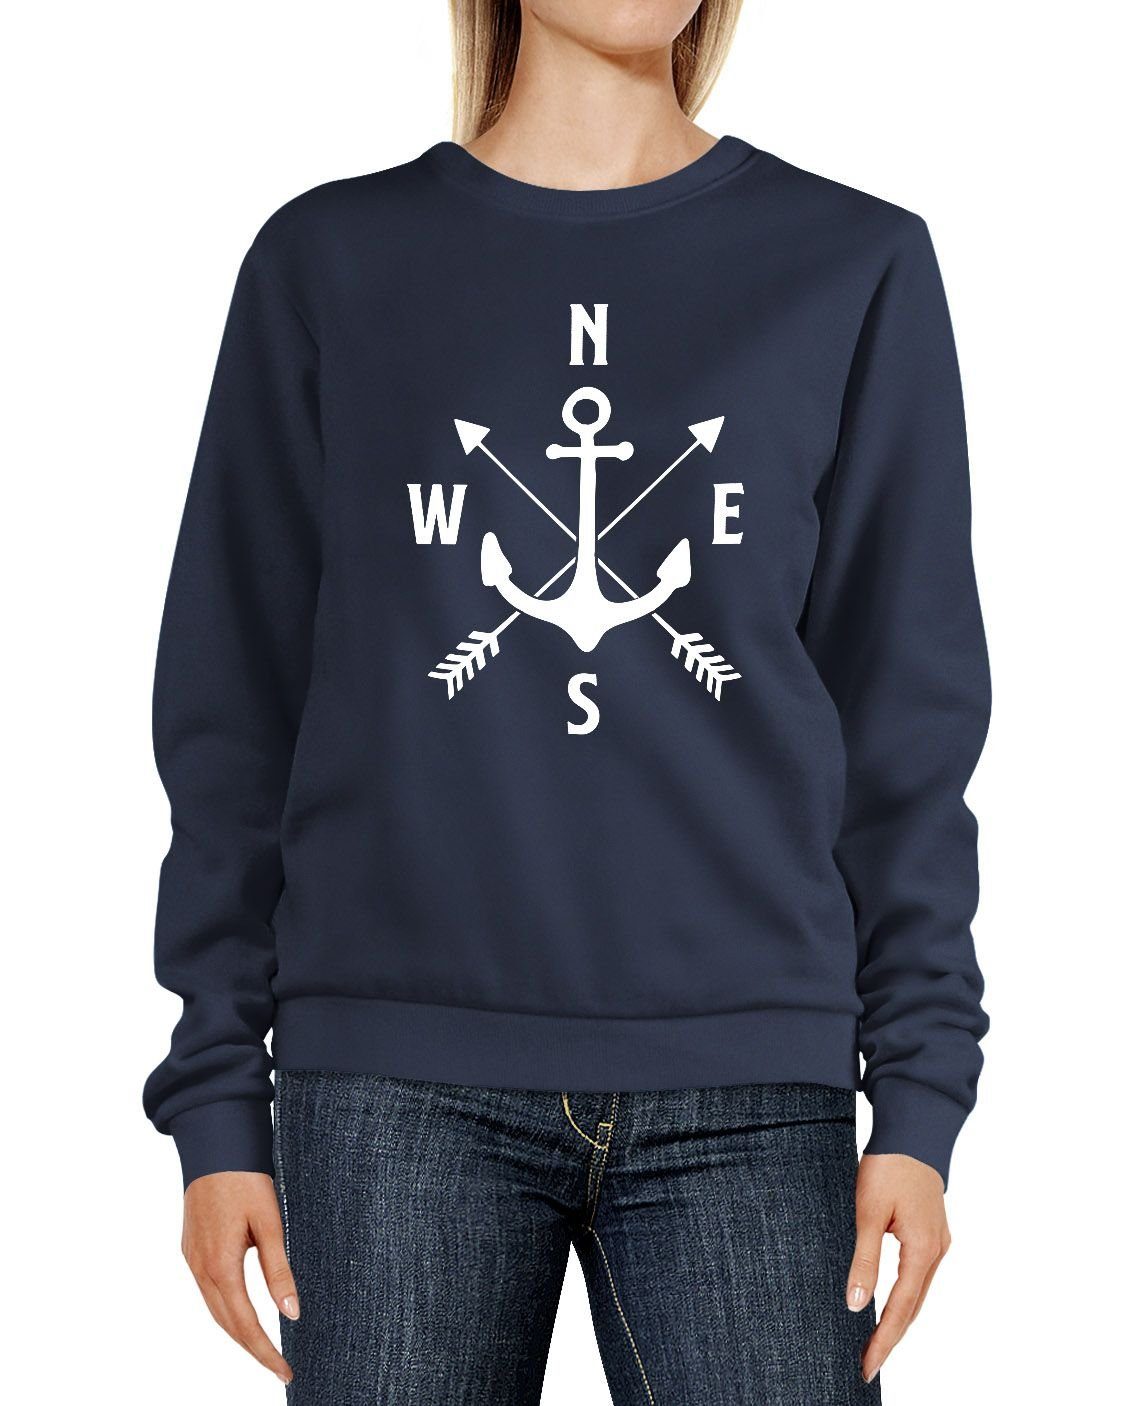 MoonWorks Sweatshirt Sweatshirt Damen Aufdruck Motiv Anker Kompass Pfeile  Rundhals-Pullover Pulli Sweater Moonworks®